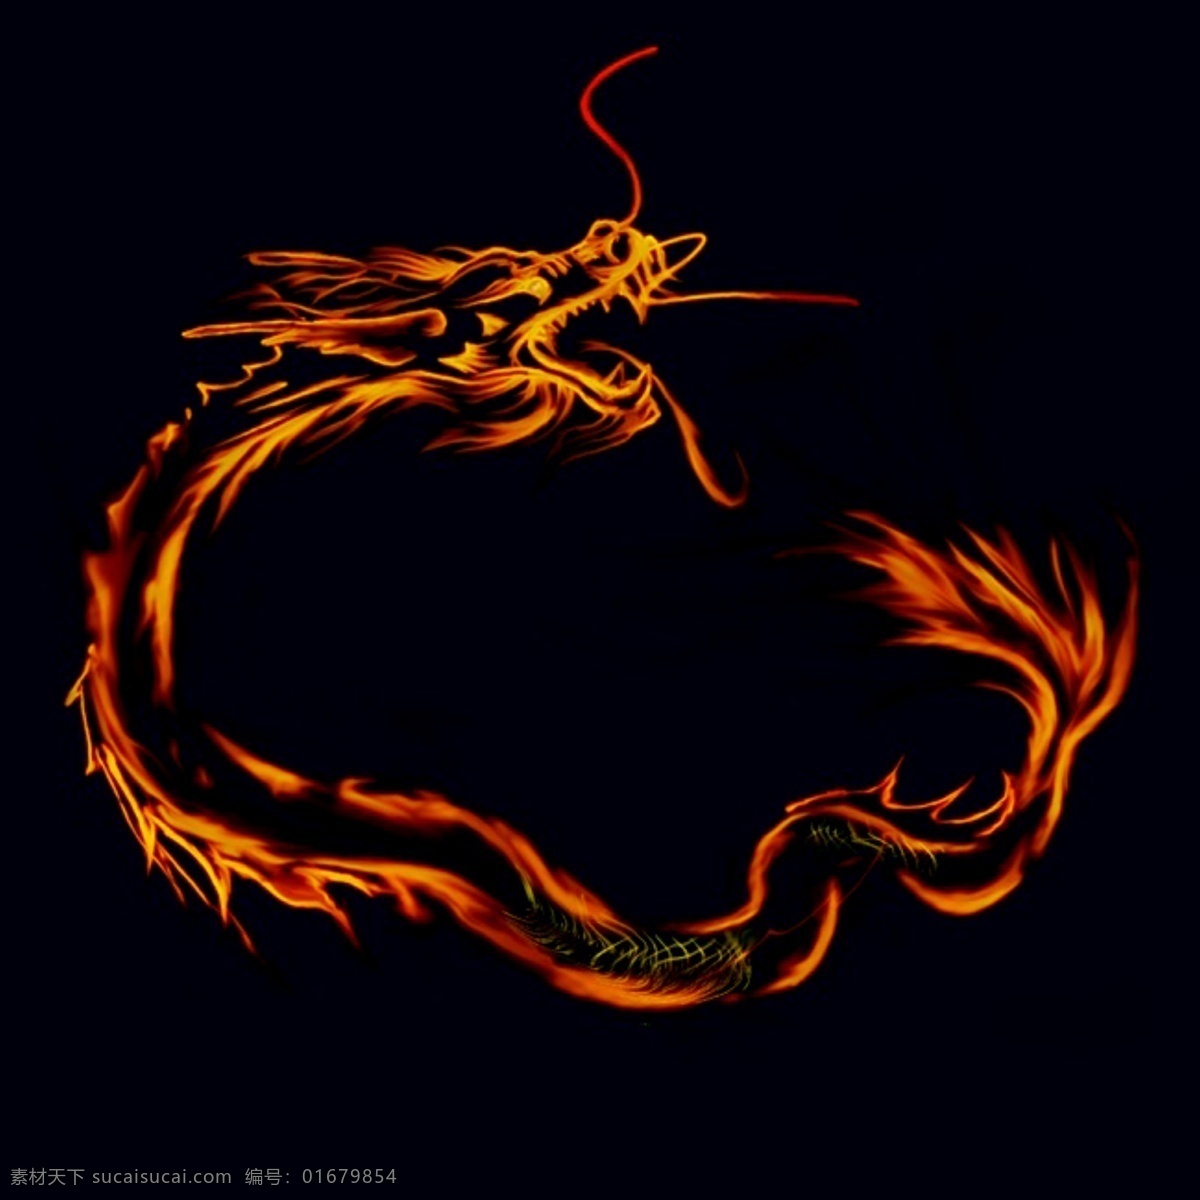 龙火焰抠图 龙 火焰 火 红 龙族 图标 分层